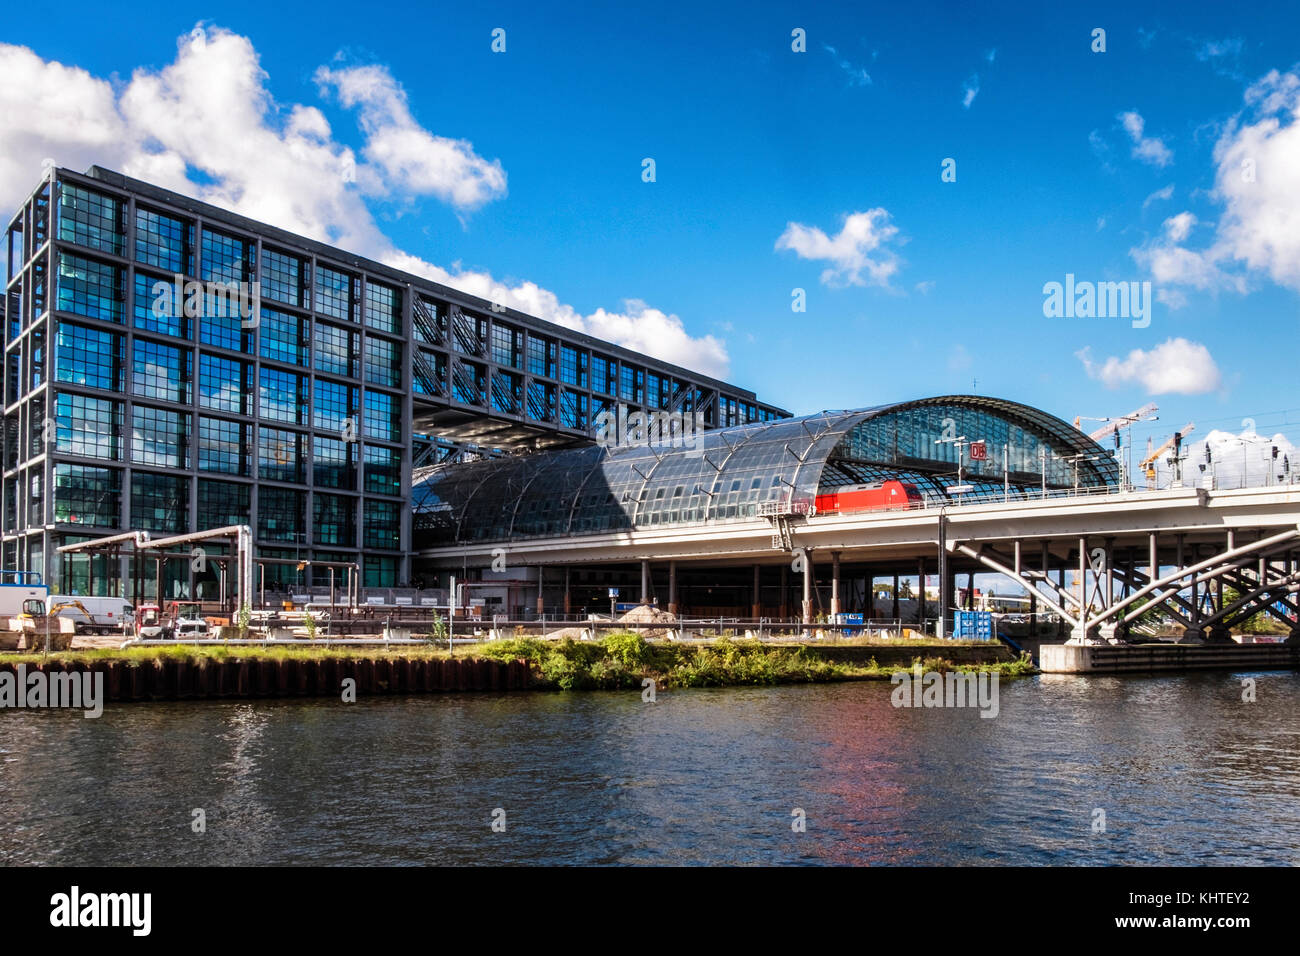 Berlin Mitte, Hauptbahnhof äußere. Moderne Glas & Stahl Gebäude neben der  Spree, BVG-Verkehrsmitteln Stockfotografie - Alamy